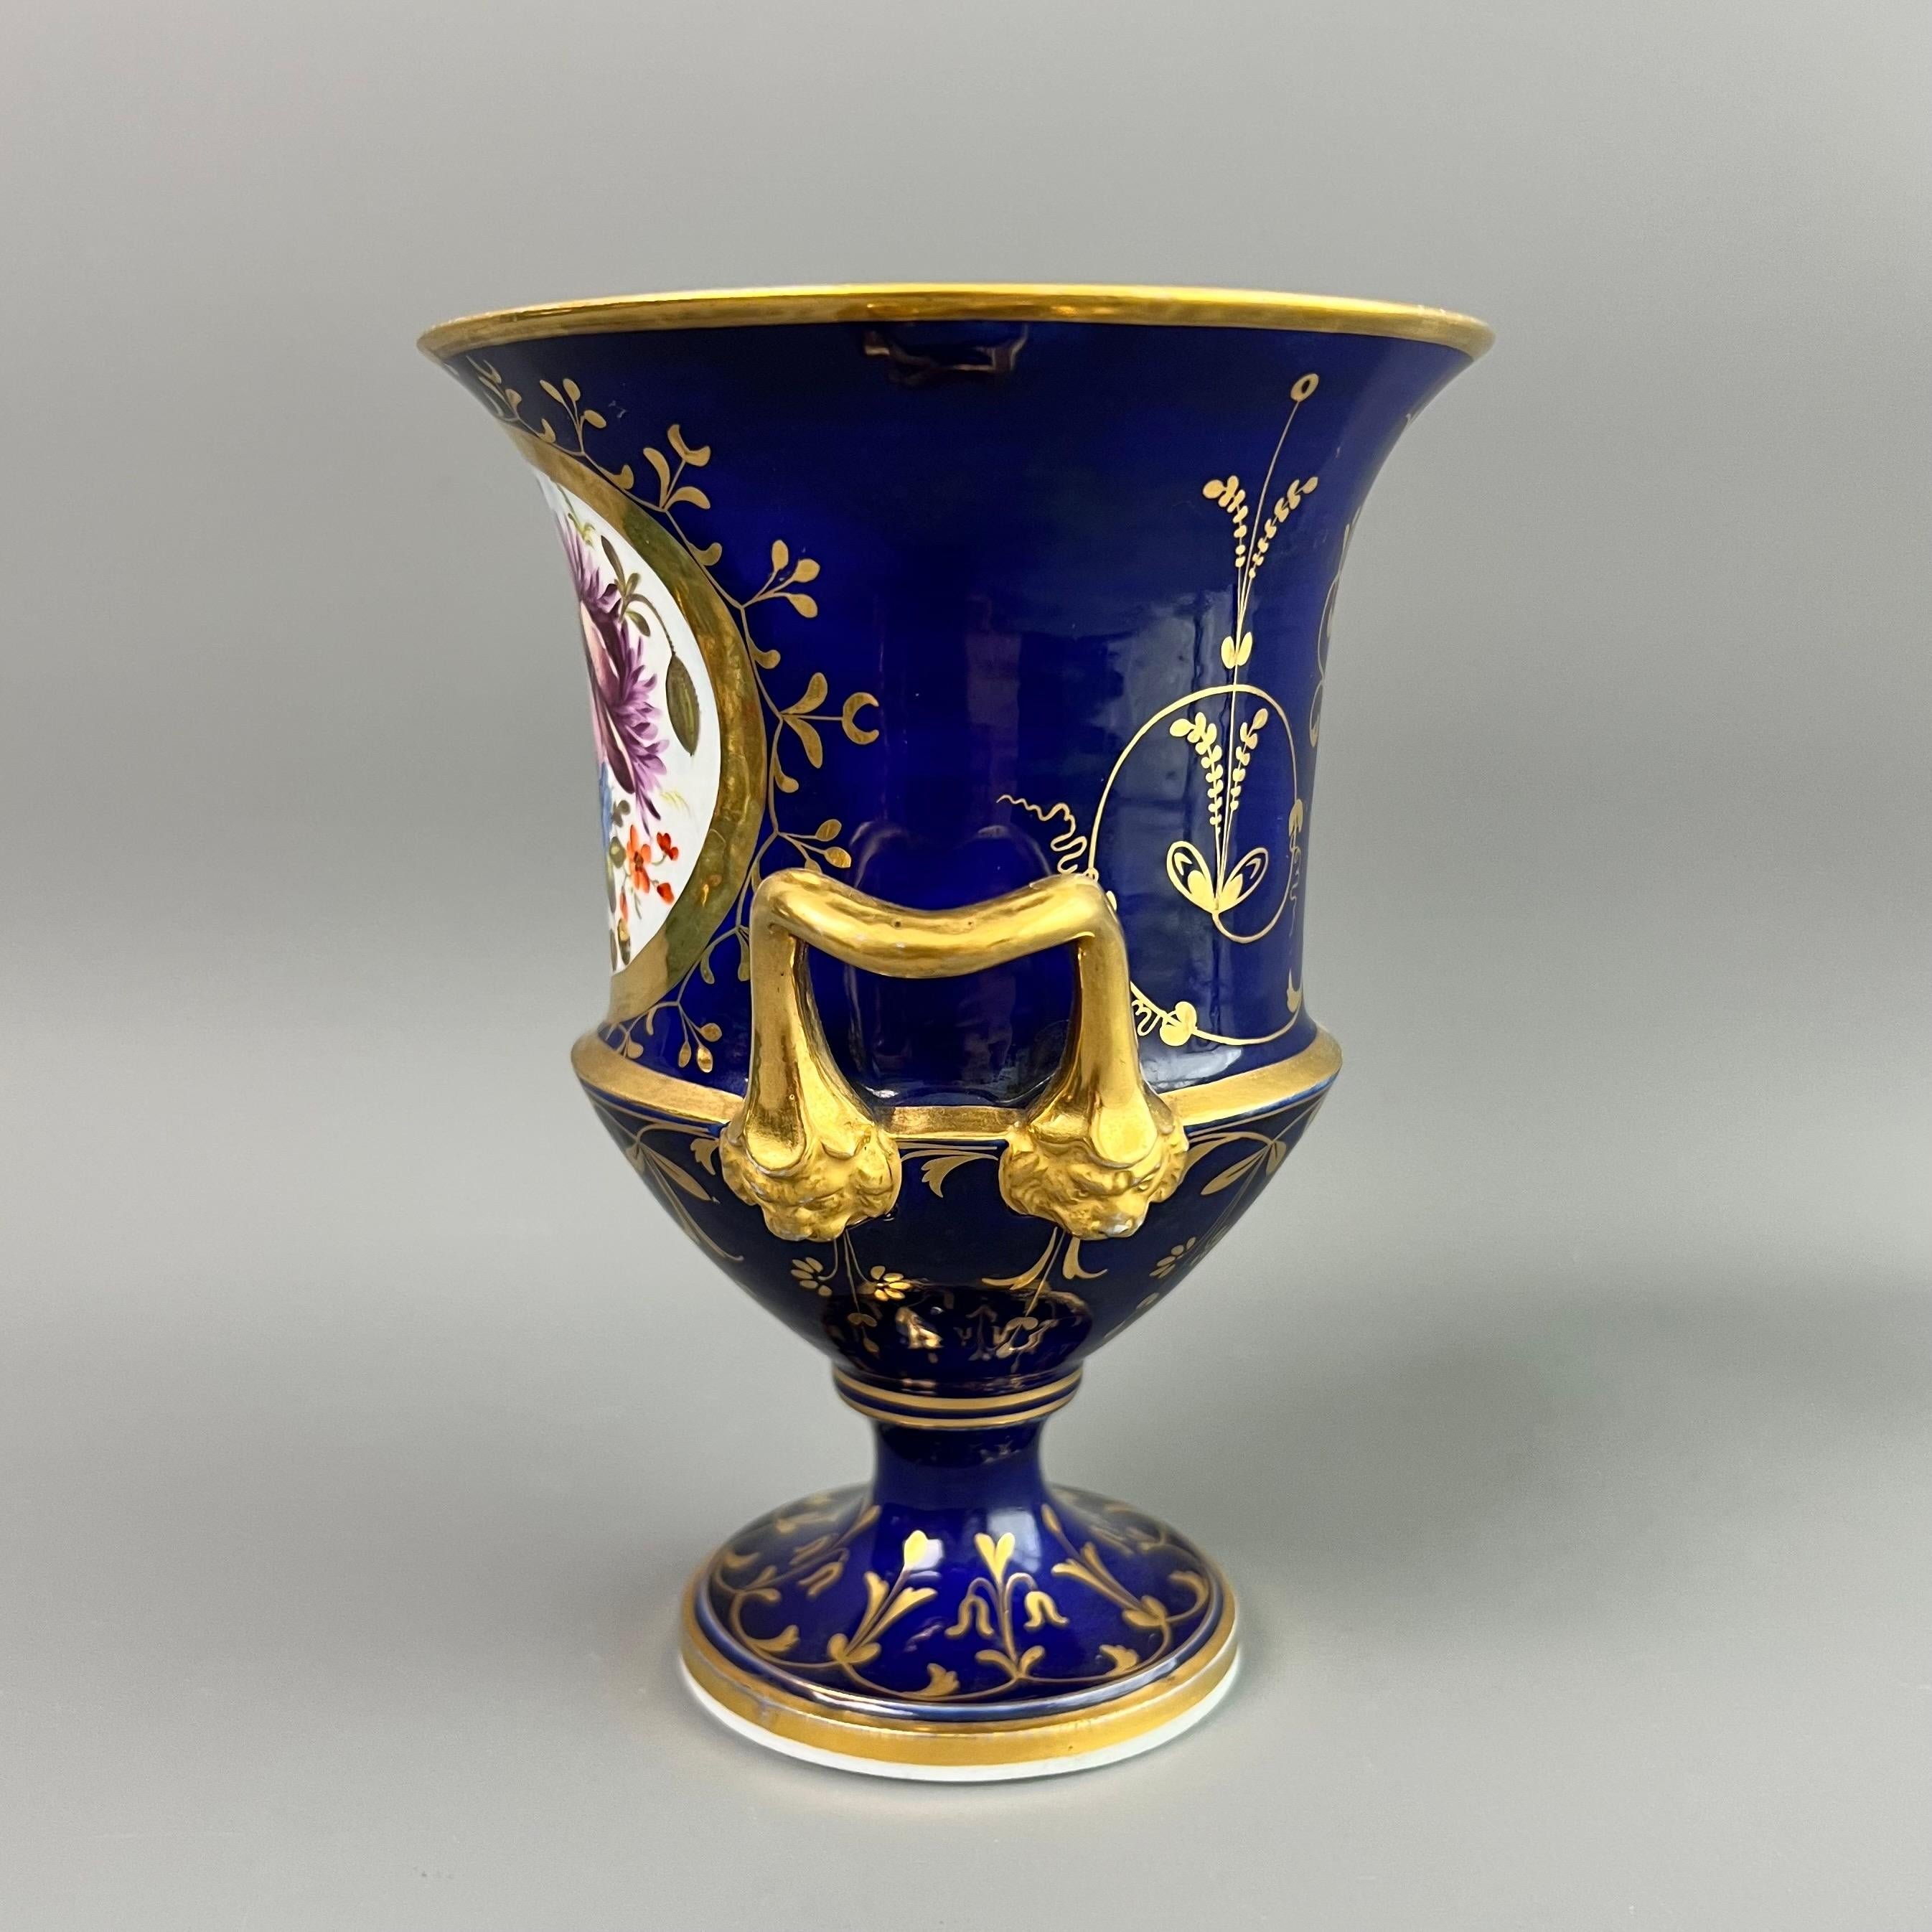 Nymphenburg Porcelain Vases and Vessels - 2 For Sale at 1stDibs